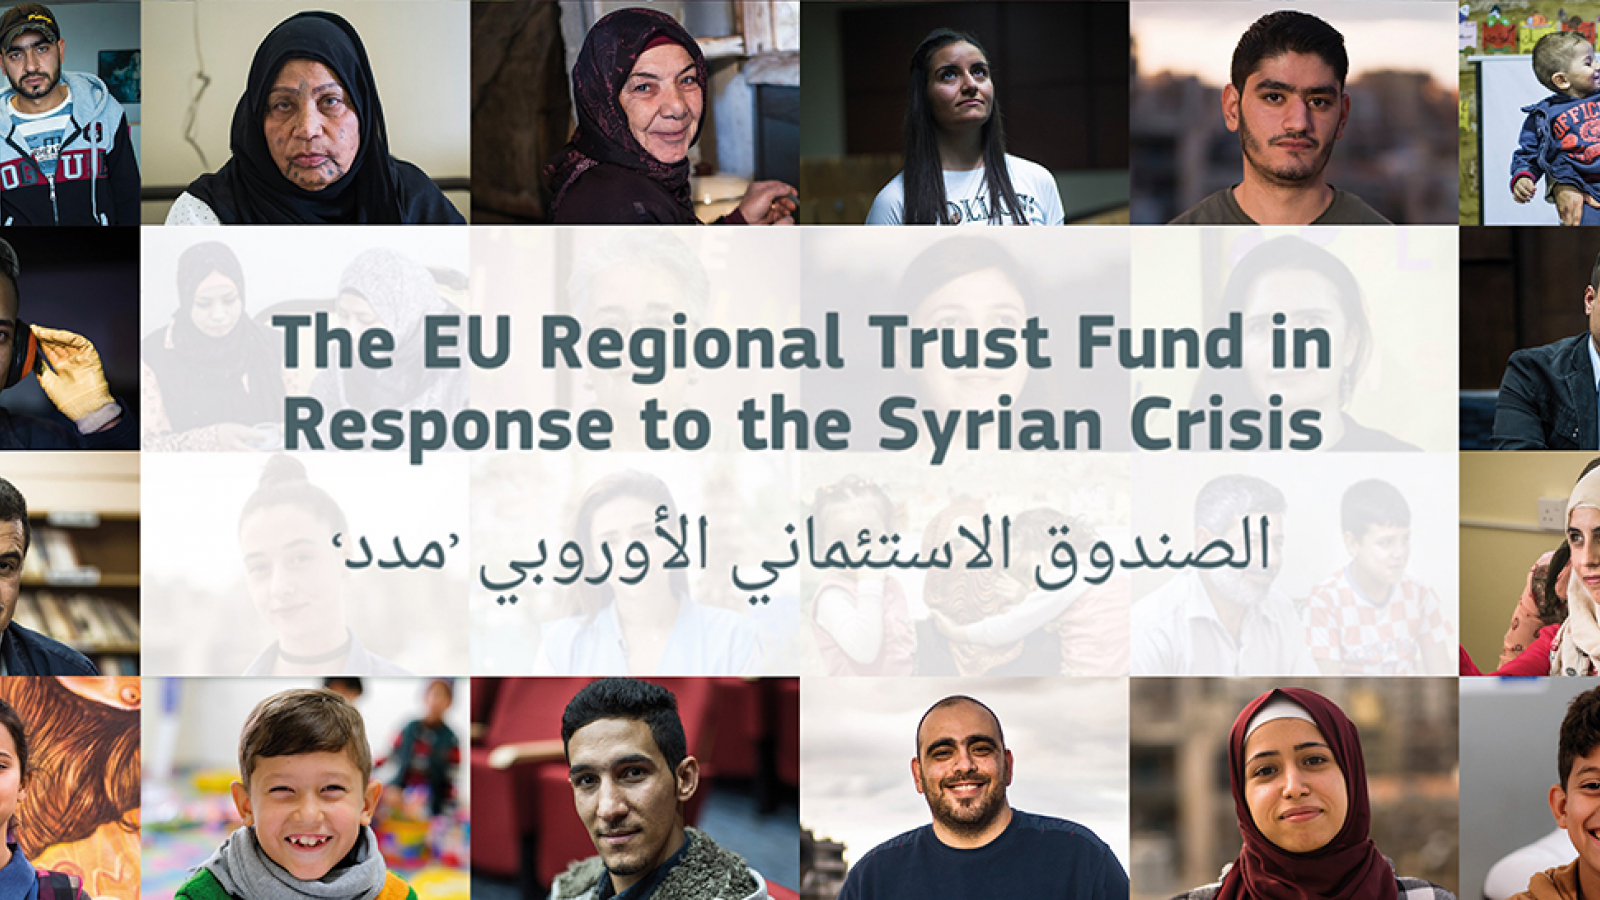 ©الصندوق الائتماني الإقليمي للاتحاد الأوروبي استجابة للأزمة السورية 